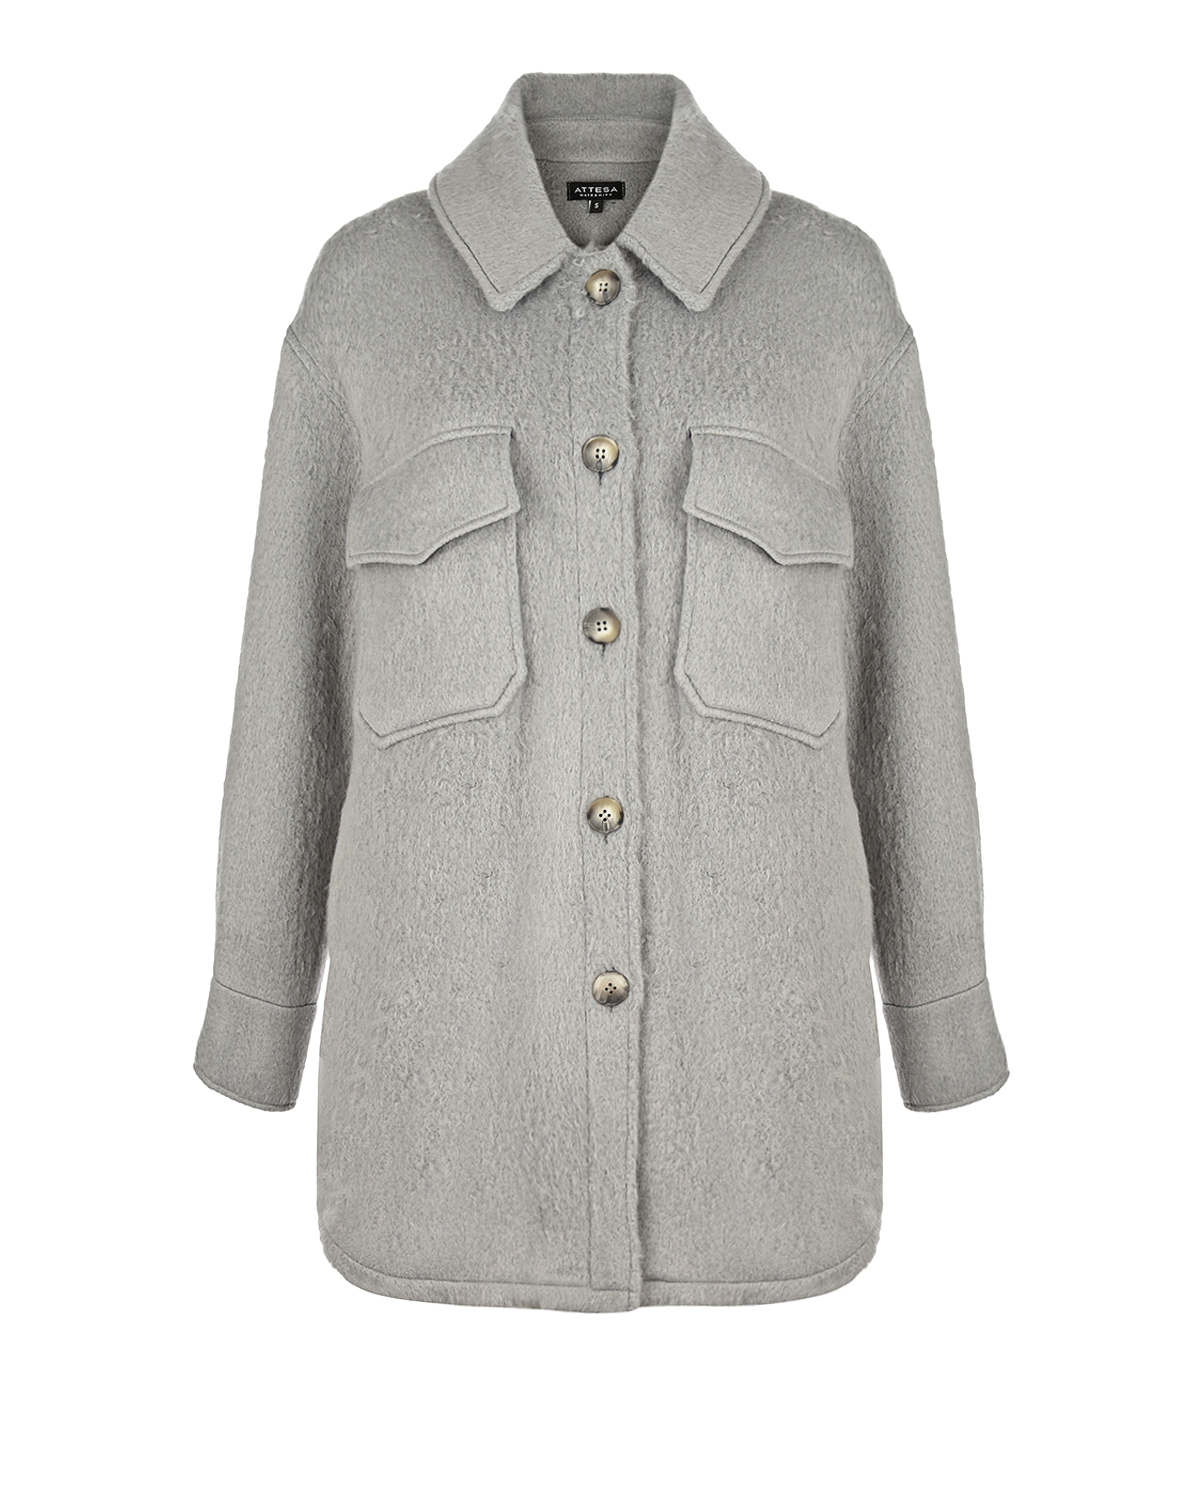 Серая куртка с накладными карманами Attesa, размер 38, цвет серый - фото 1